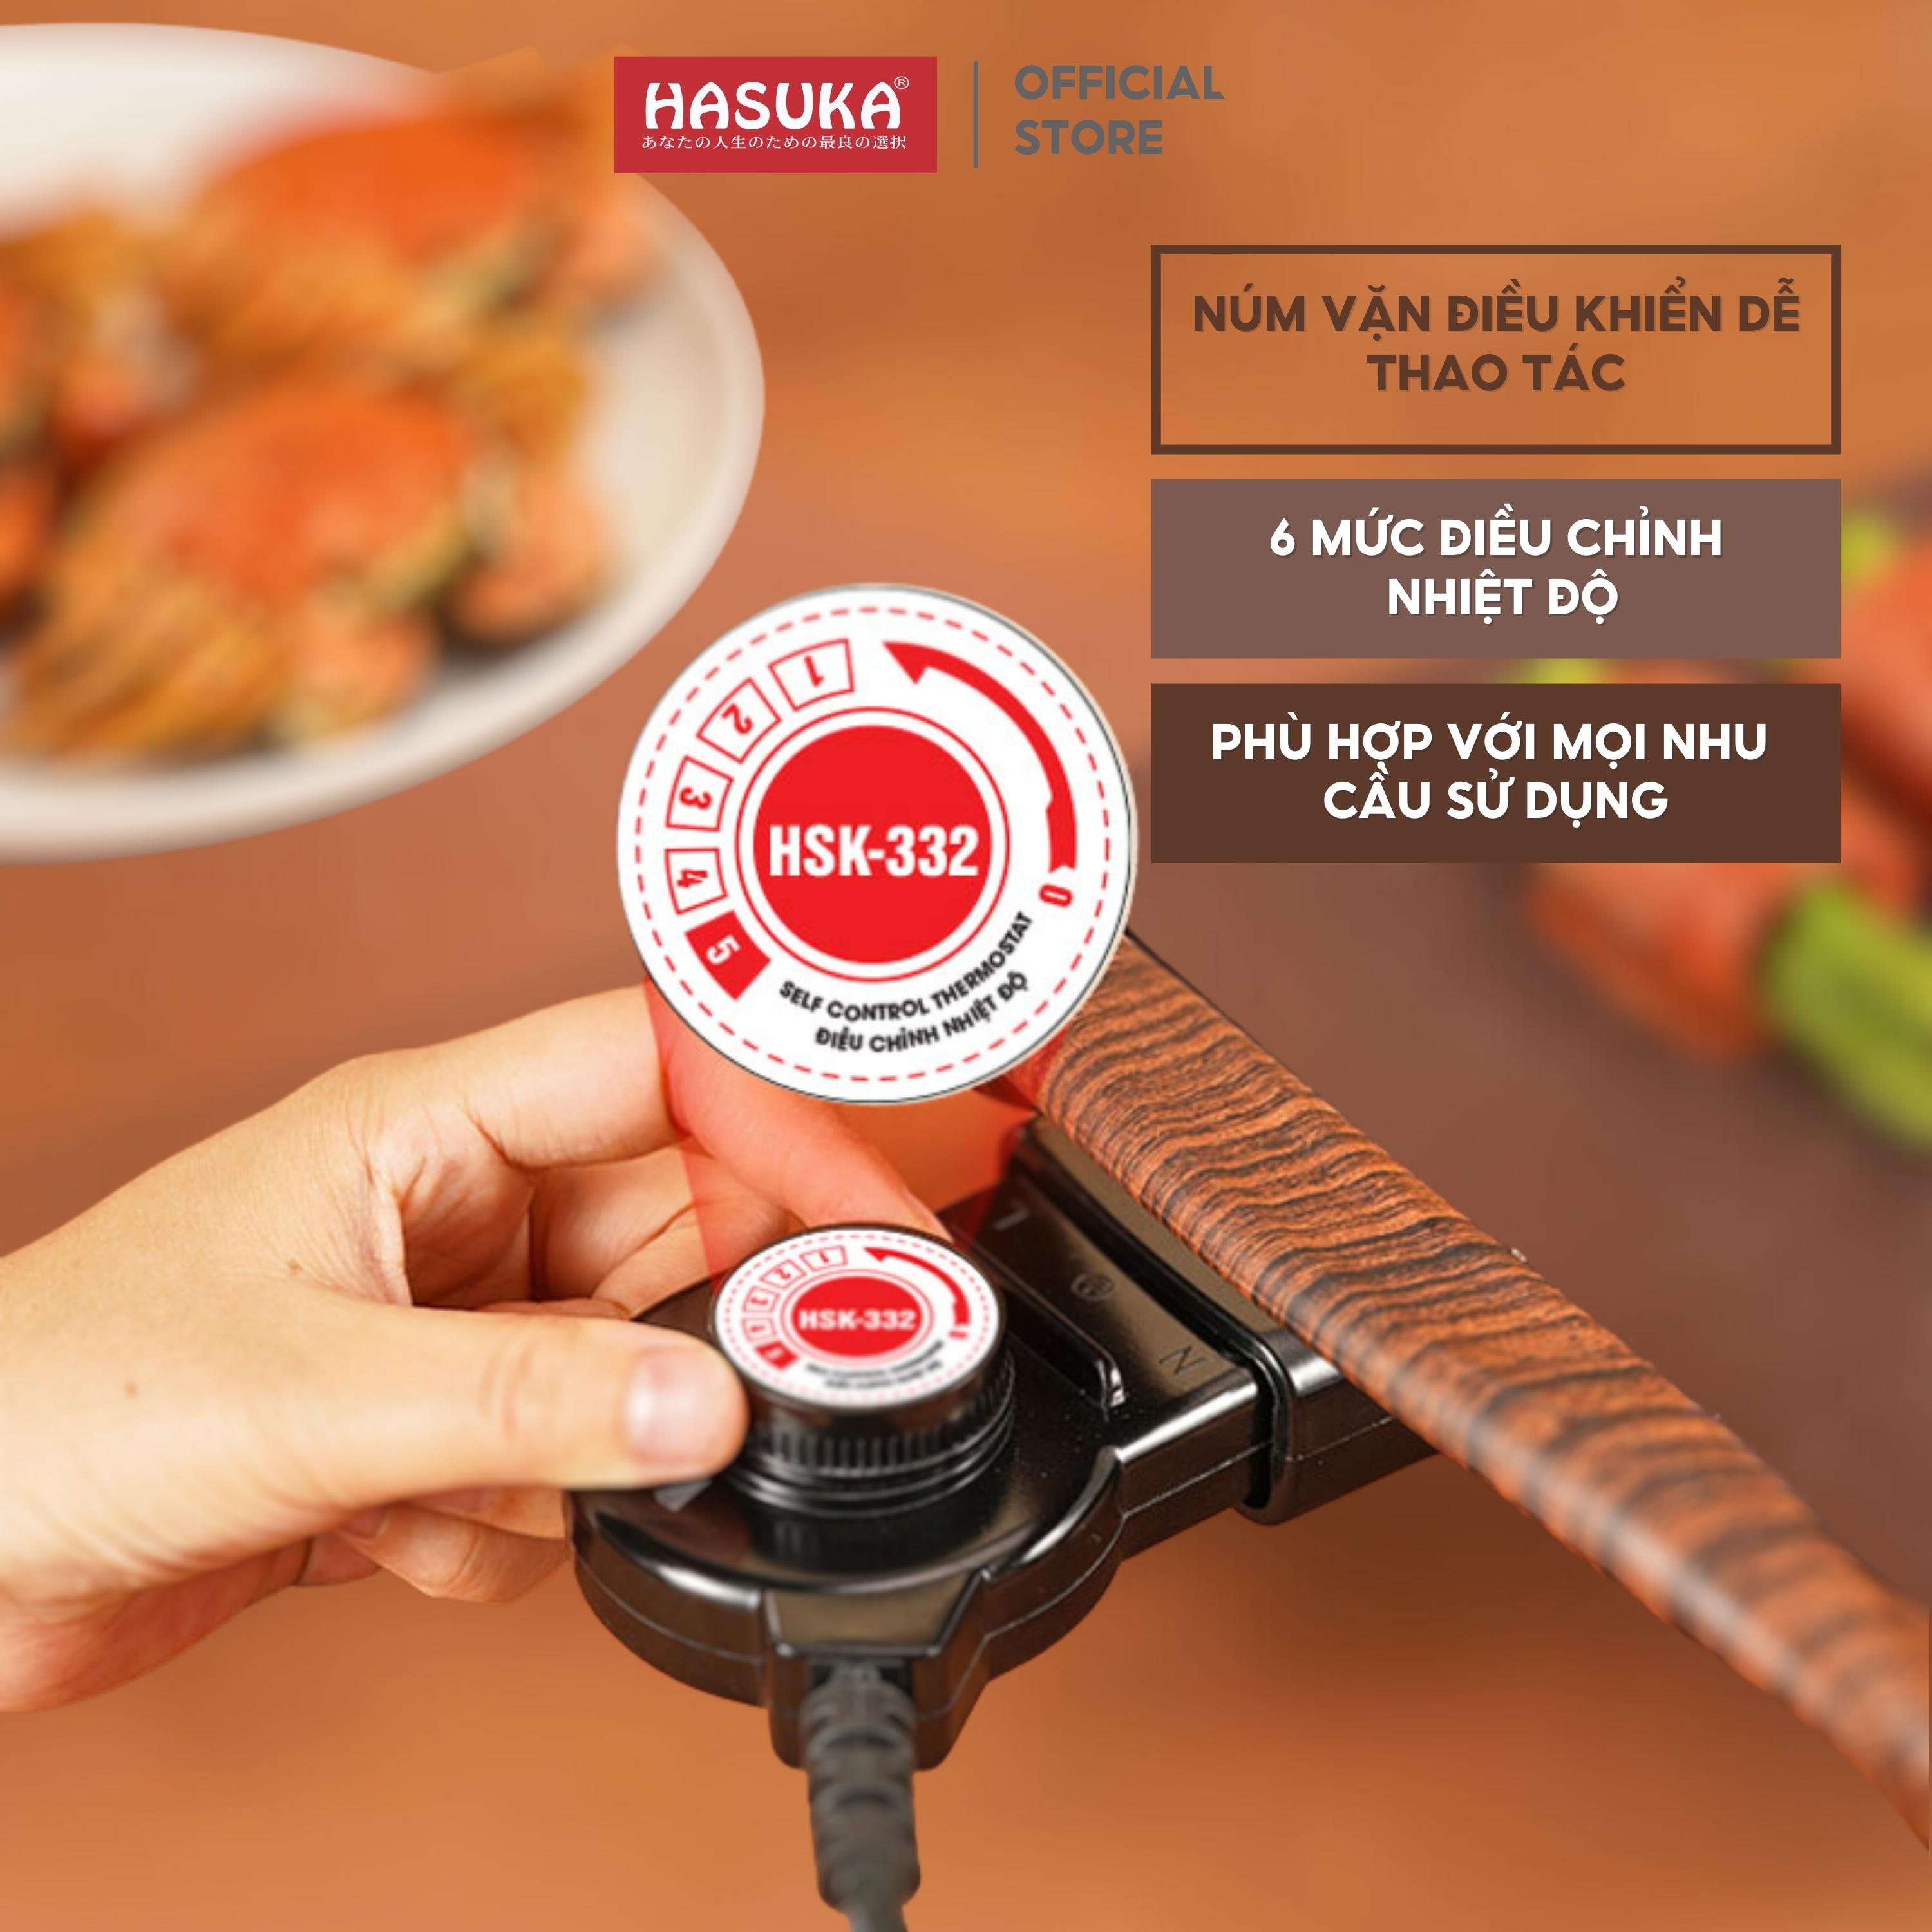 Bếp nướng điện HASUKA HSK-332 công suất 1600W cảm biến nhiệt thông minh, mặt nướng chống dính Ceramic an toàn - HÀNG CHÍNH HÃNG